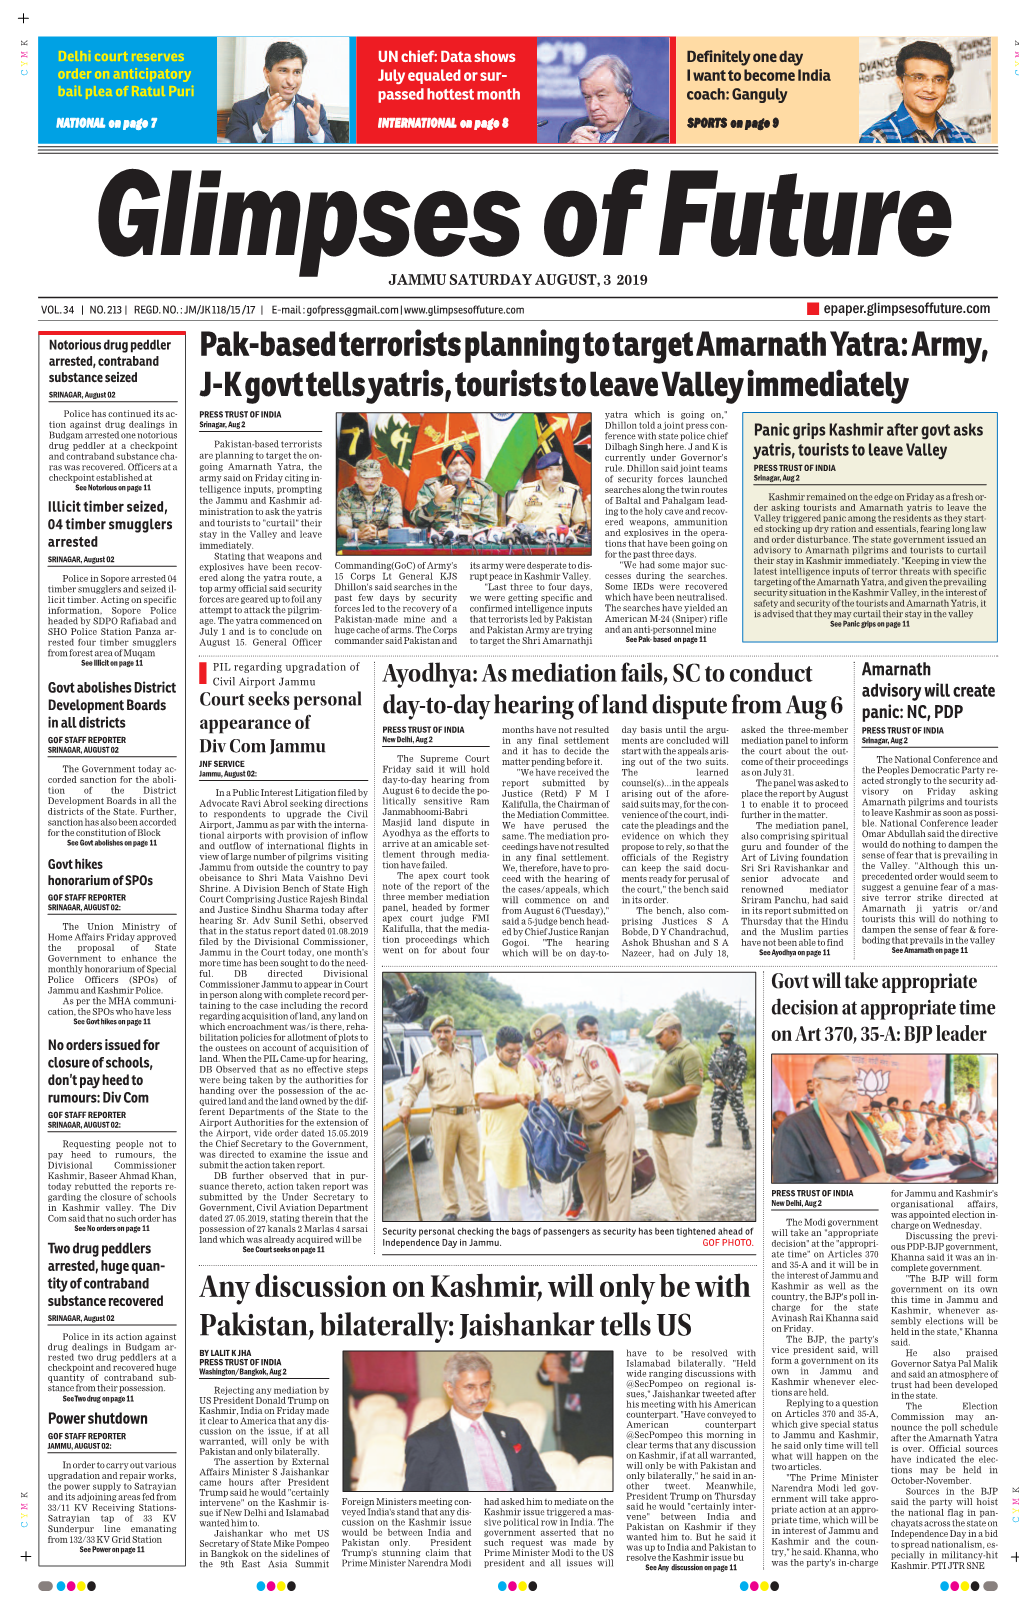 Pak-Based Terrorists Planning to Target Amarnath Yatra